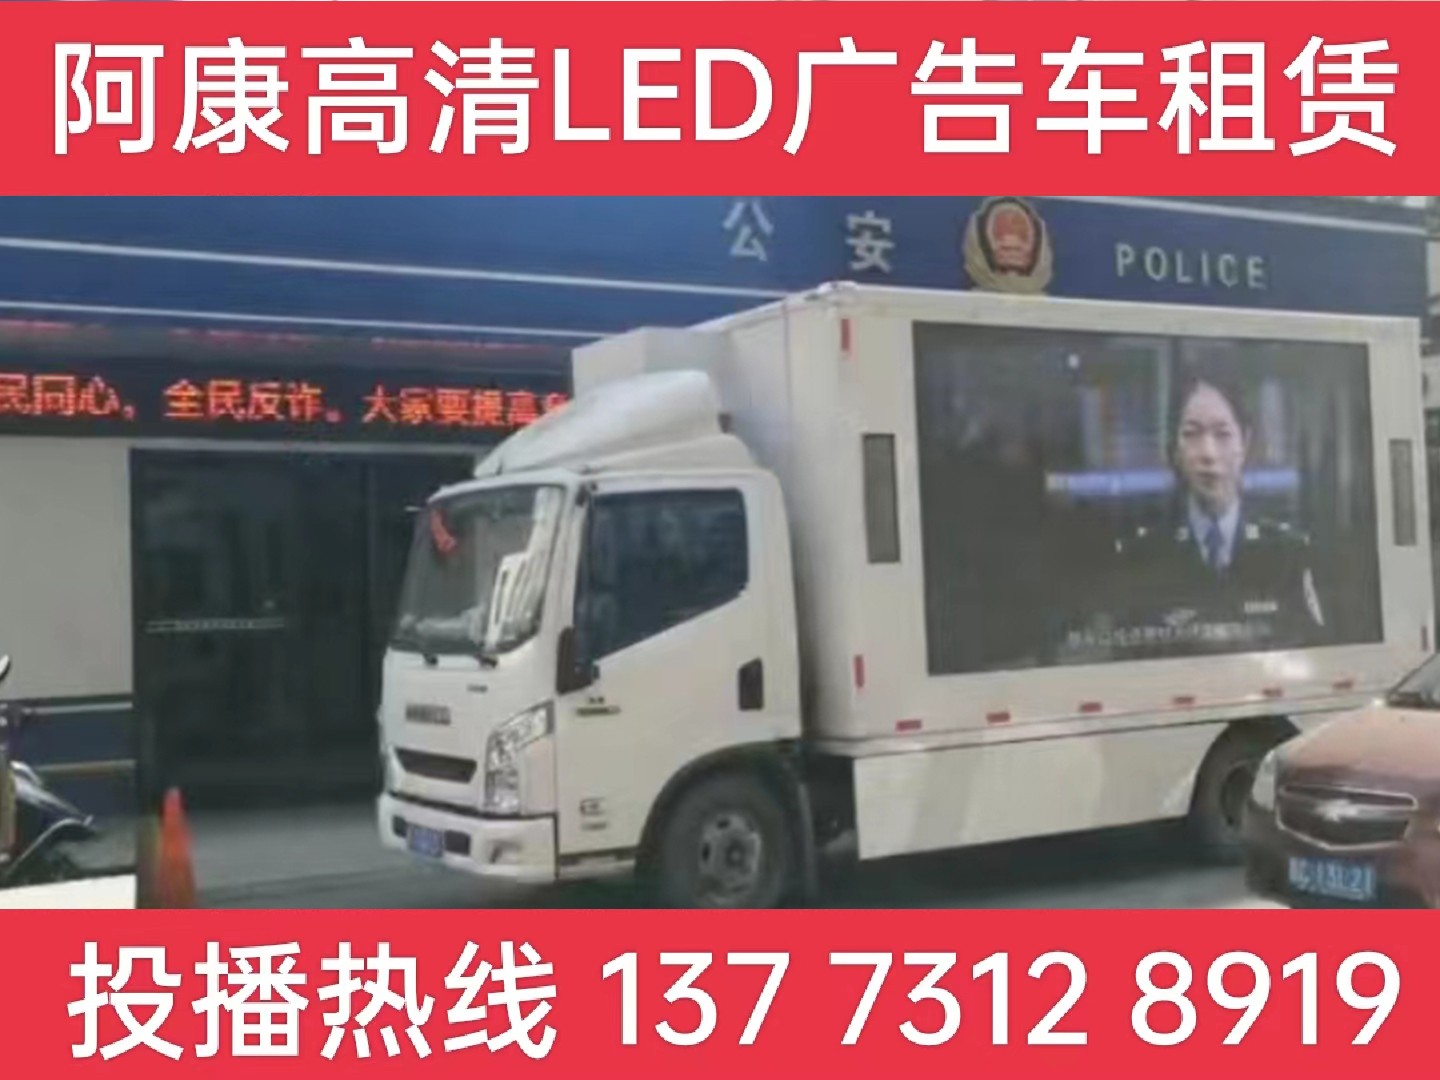 高港区LED广告车租赁-反诈宣传